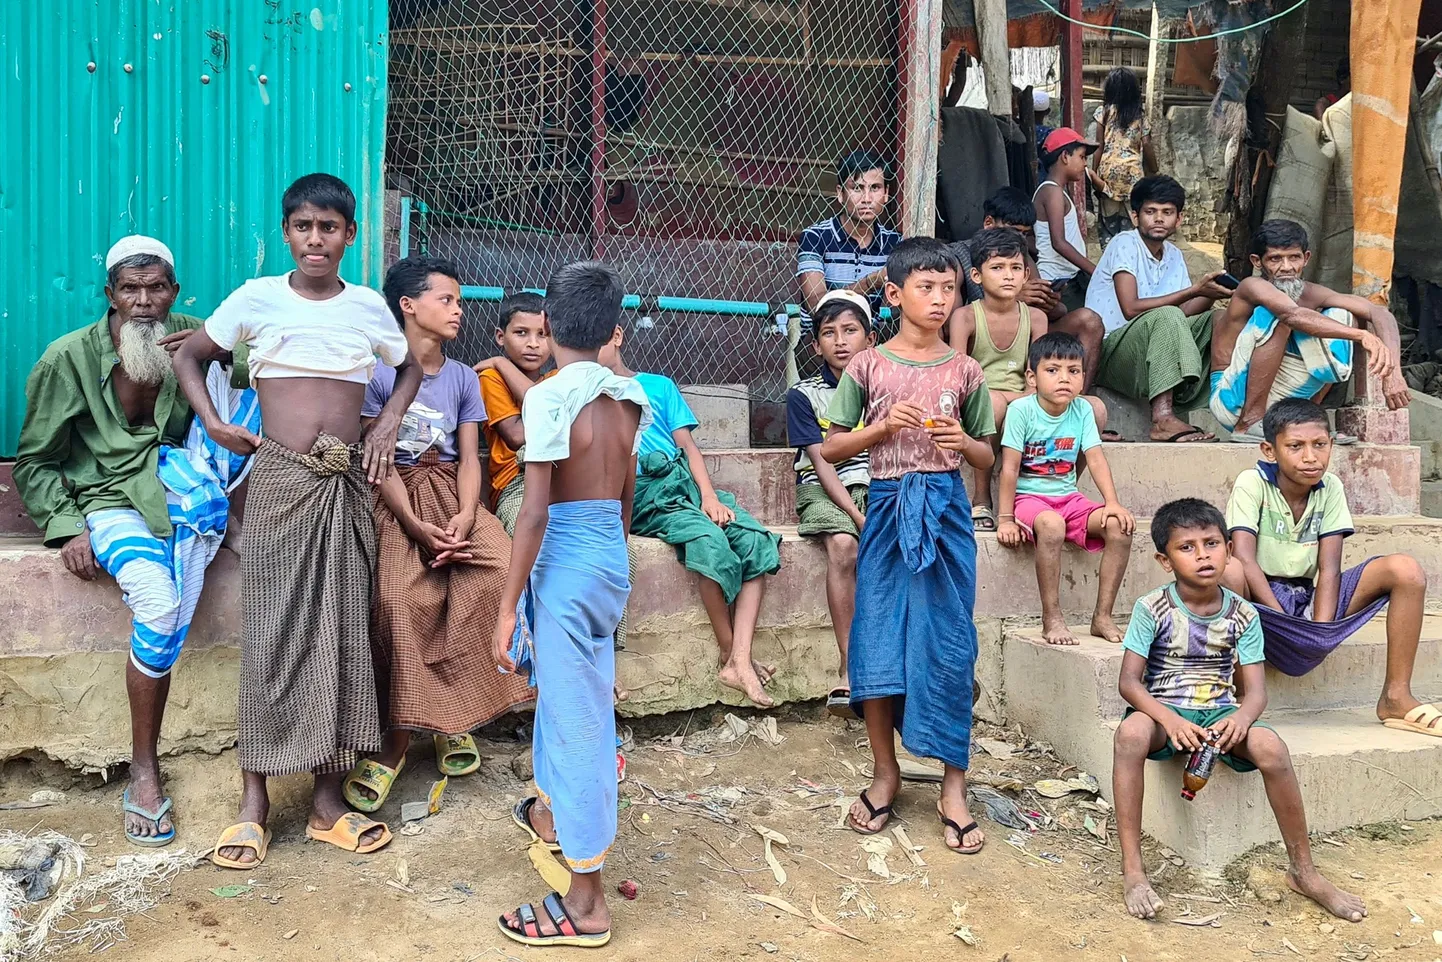 Mai lõpus tehtud foto näitab elu rohingjate põgenikelaagris Ukhias, mis asub Bangladeshi kaguosas Cox's Bazari piirkonnas. Mässulised rohingja rühmitused Bangladeshis on samuti värvanud jõuga sadu noori rohingja mehi ja poisse, et saata neid võitlema naaberriigis Myanmaris tegutseva mässulise Arakani Armee vastu, mis on sealse huntaga pidanud edukaid lahinguid.